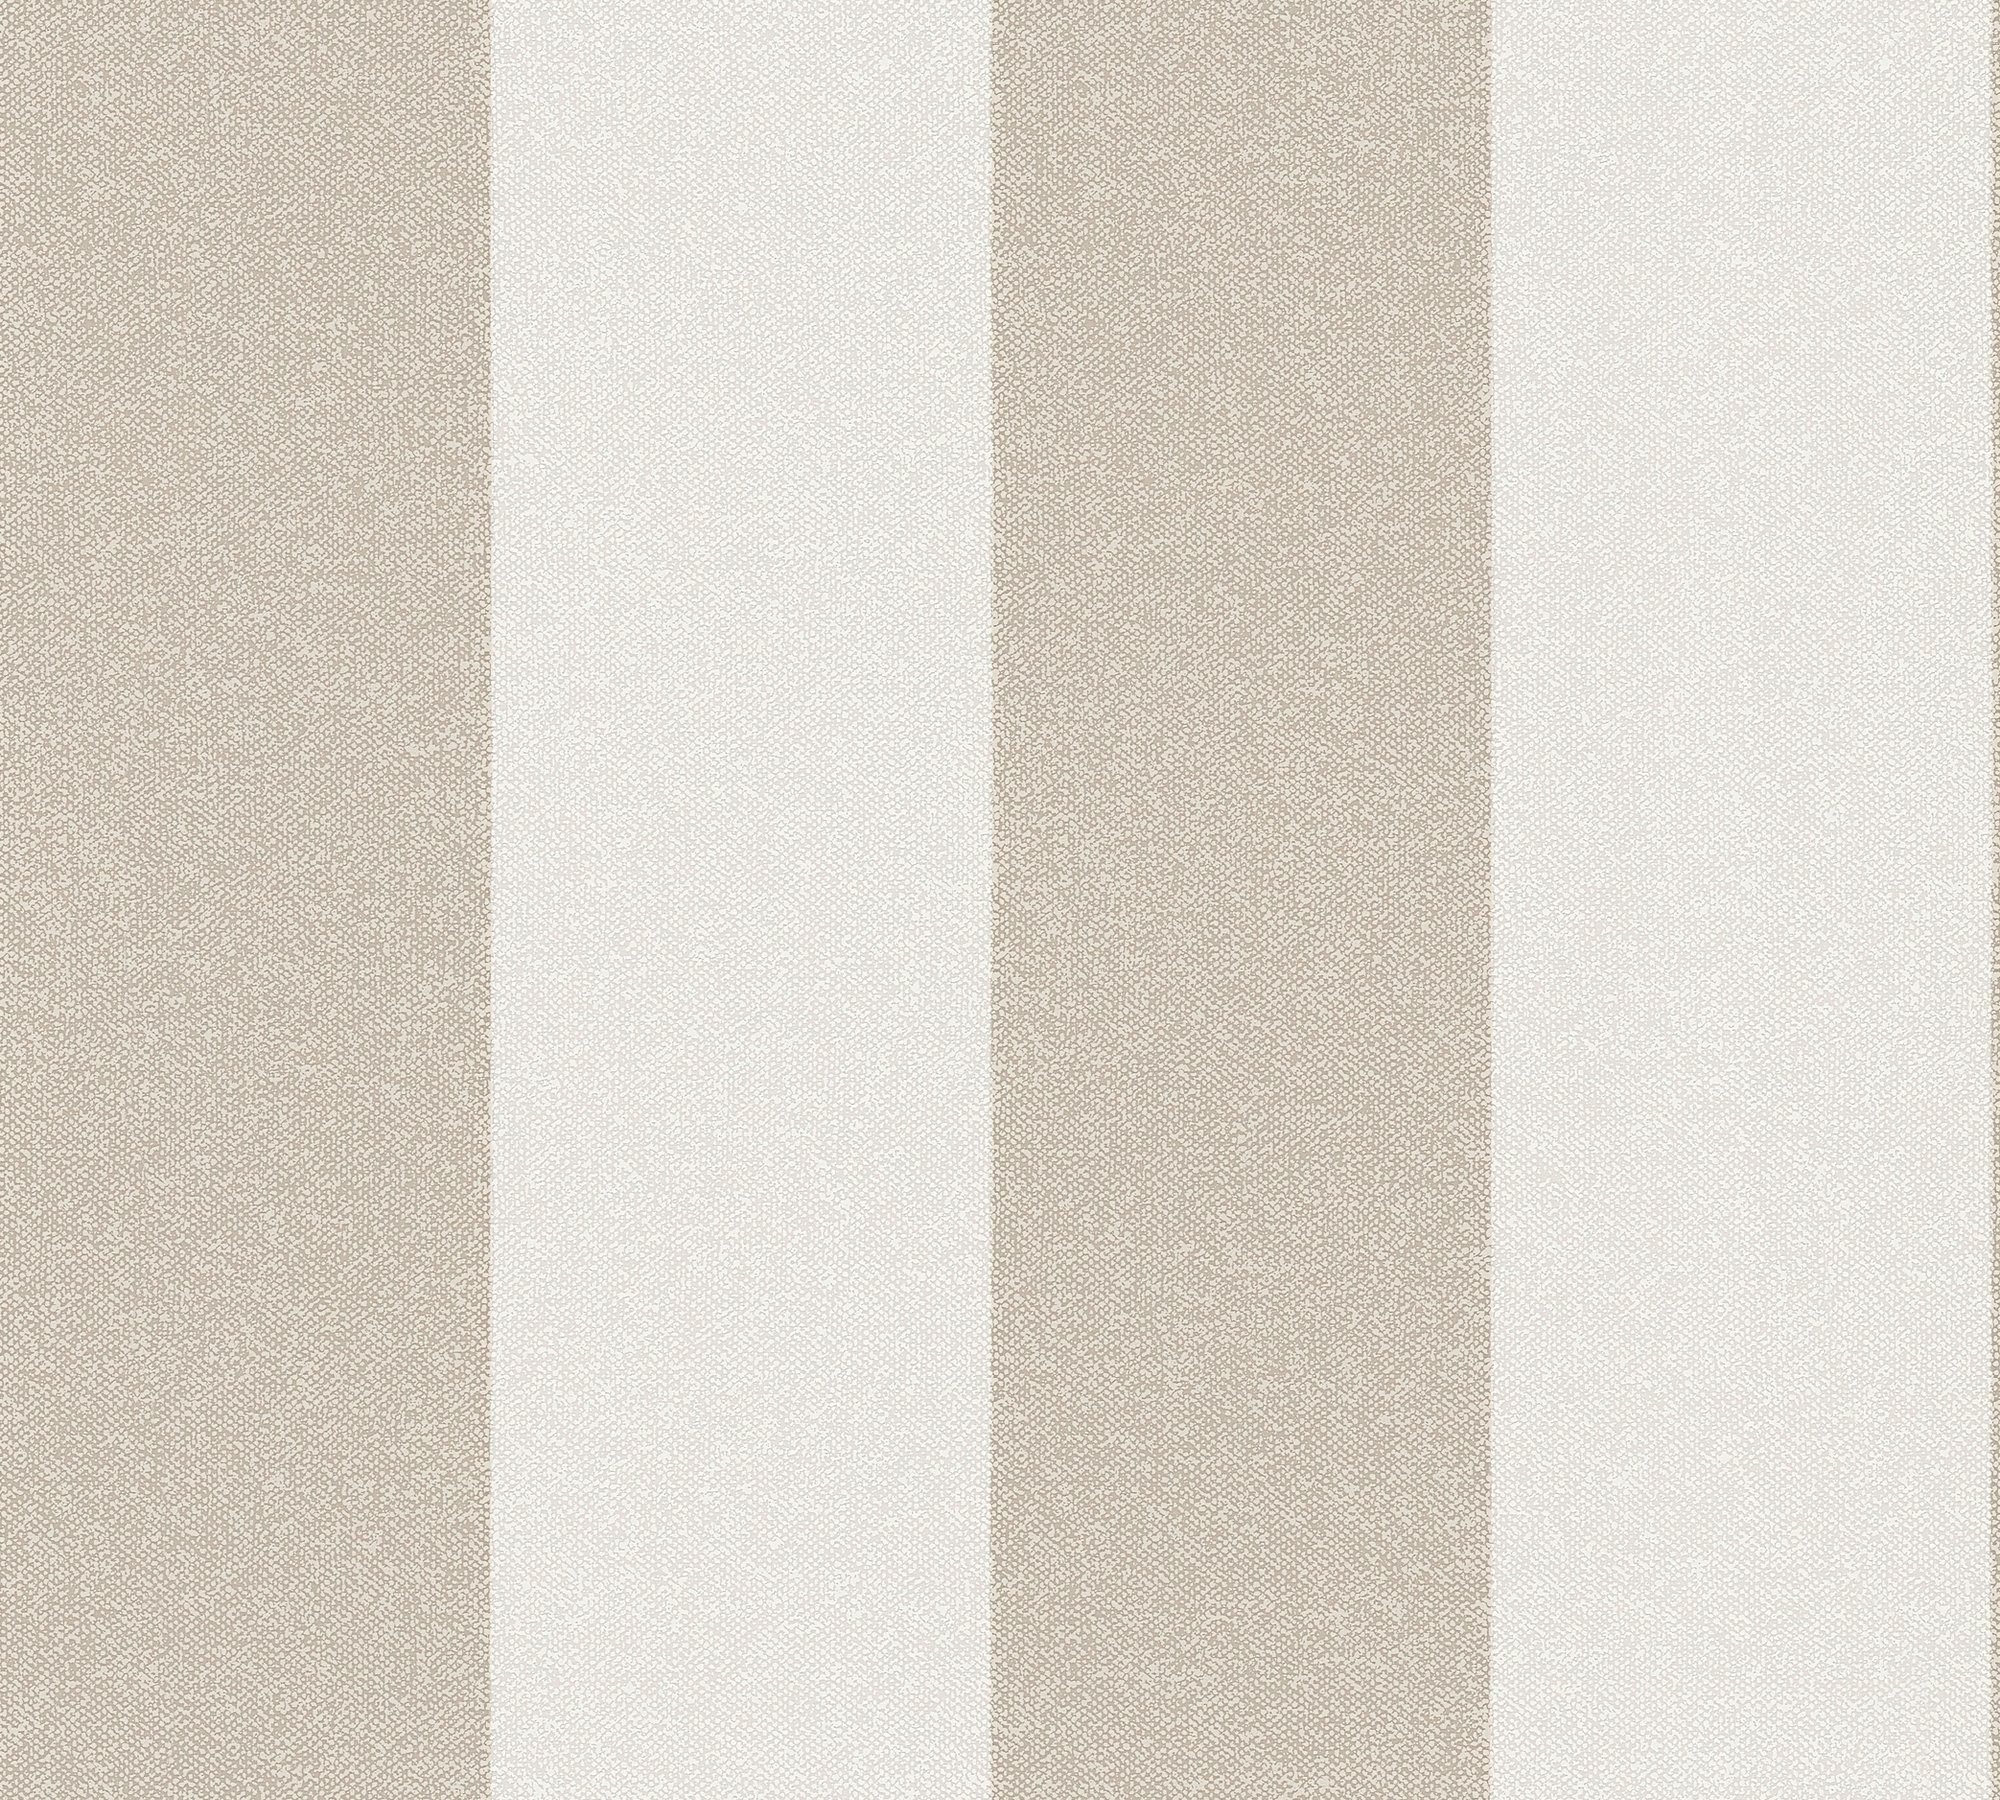 A.S. Création Vliestapete Streifen, New braun/weiß Tapete Elegance, Streifen aufgeschäumt